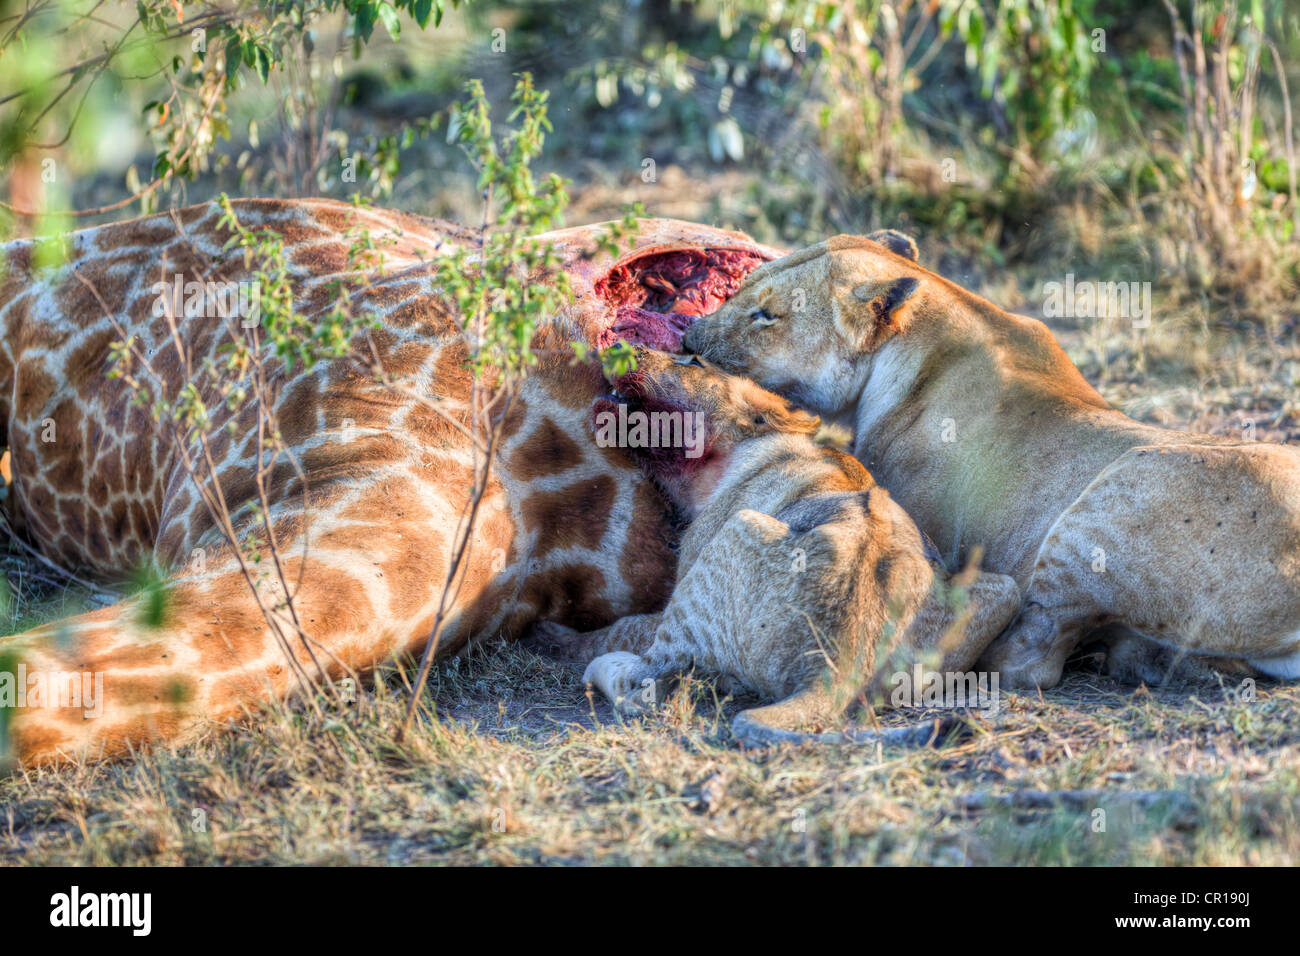 El orgullo de los Leones (Panthera leo) alimentándose de una jirafa, Reserva Nacional de Masai Mara, Kenia, África oriental, África PublicGround Foto de stock